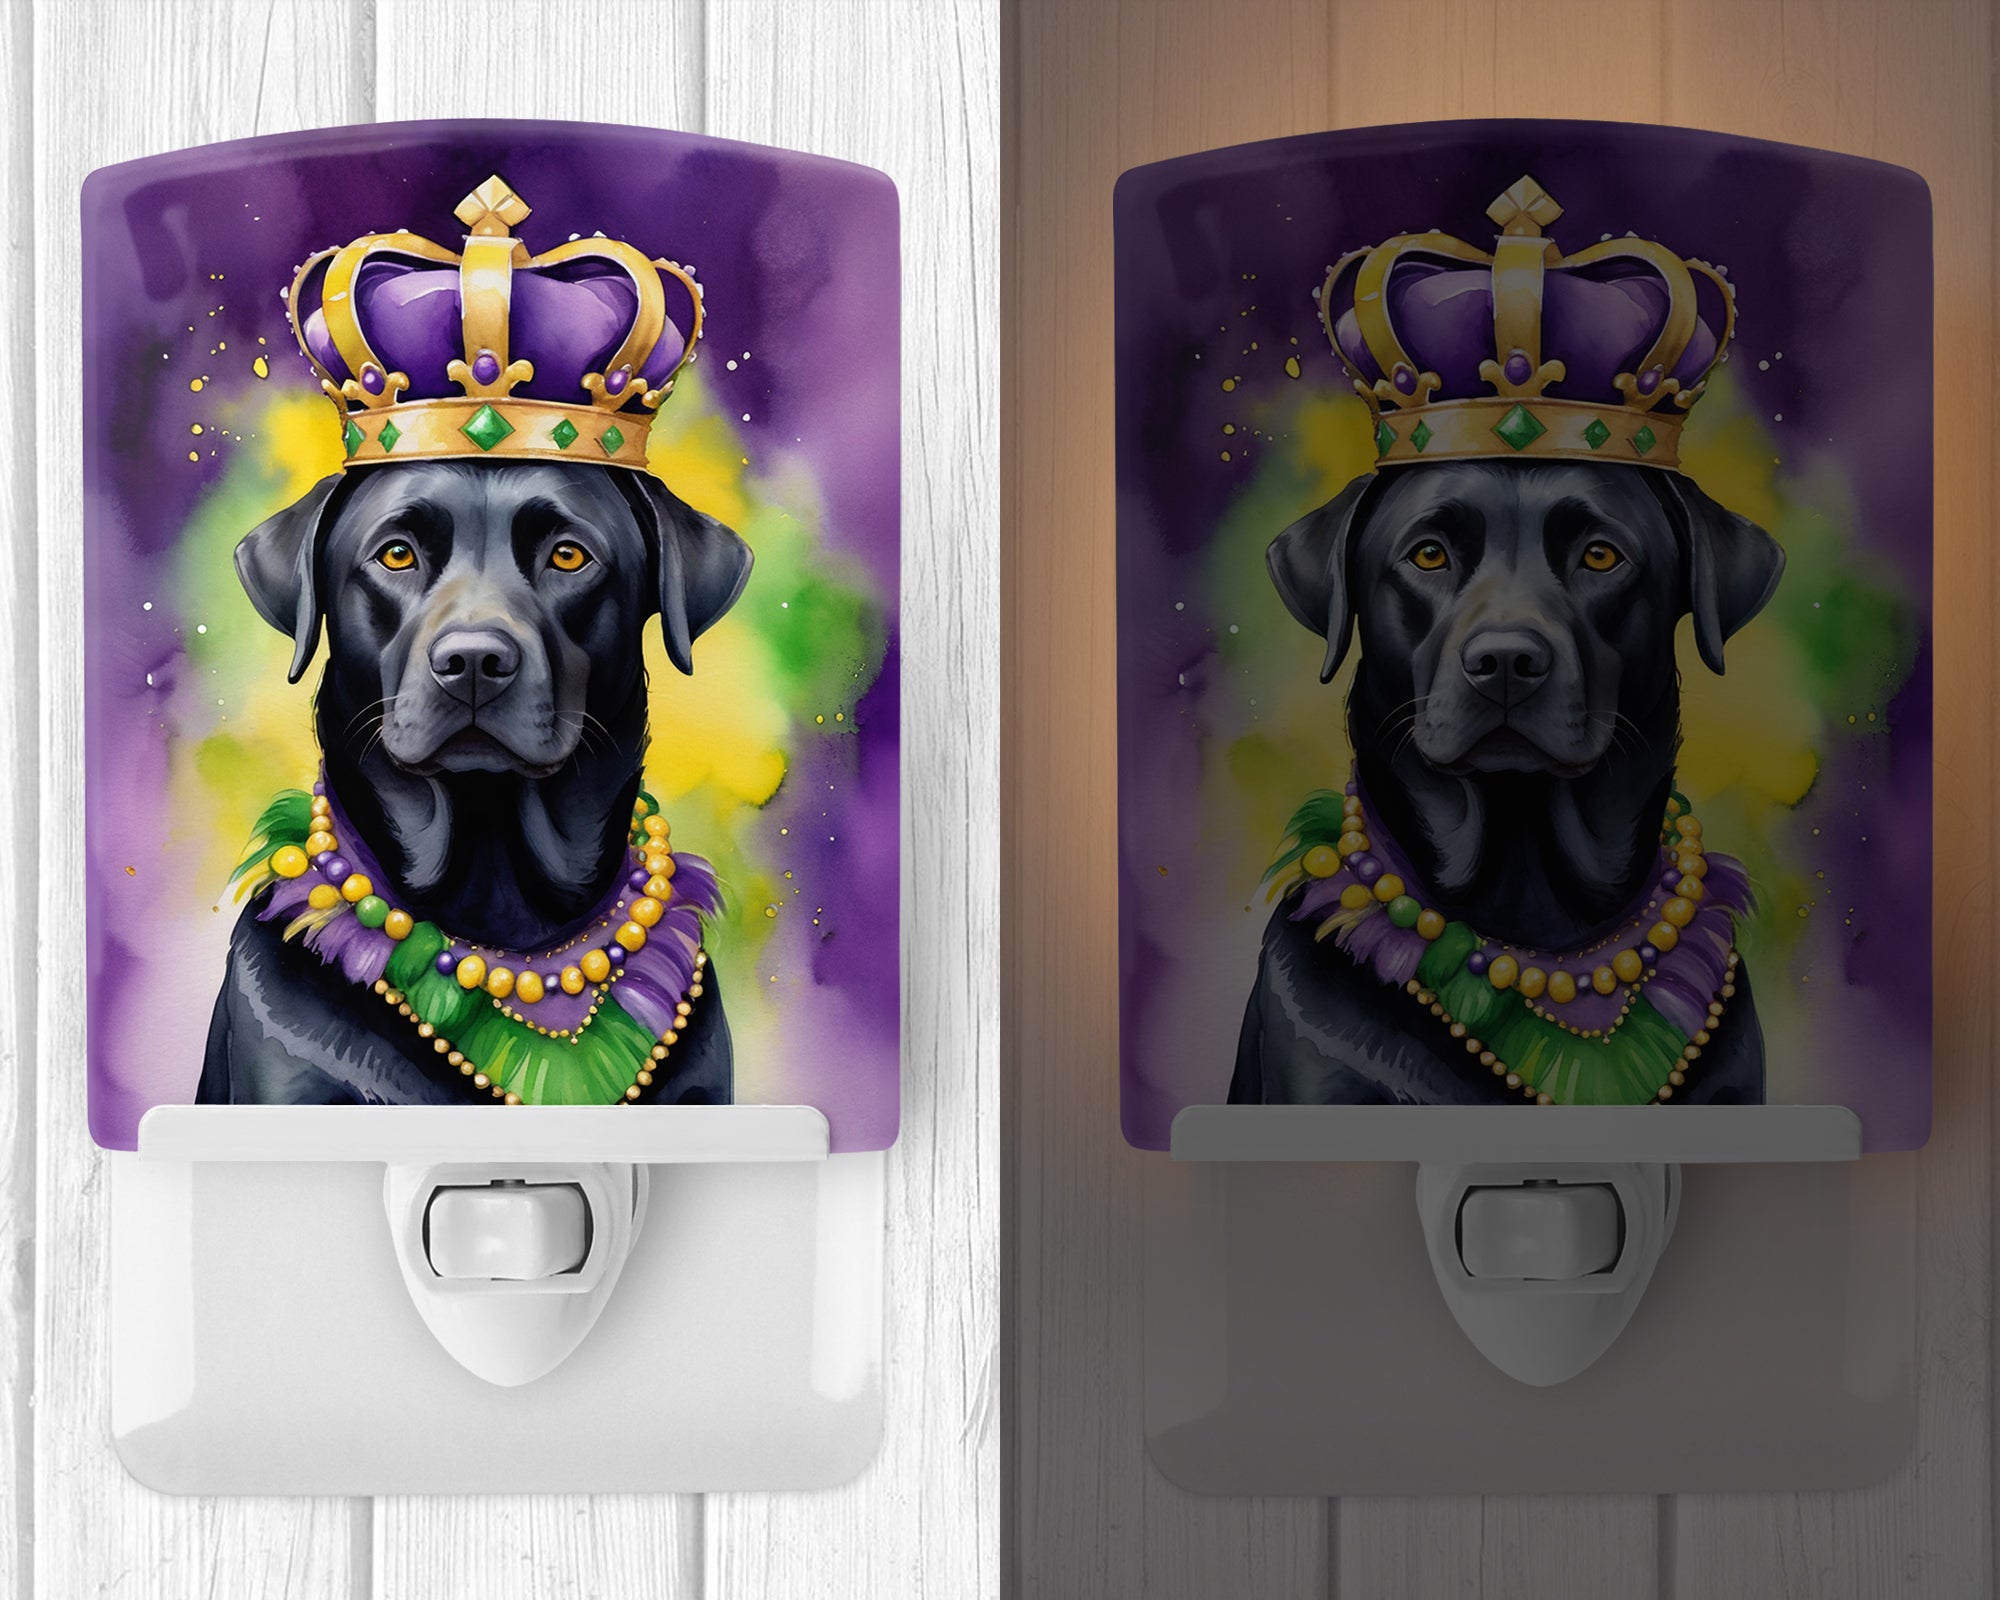 Buy this Labrador Retriever King of Mardi Gras Ceramic Night Light